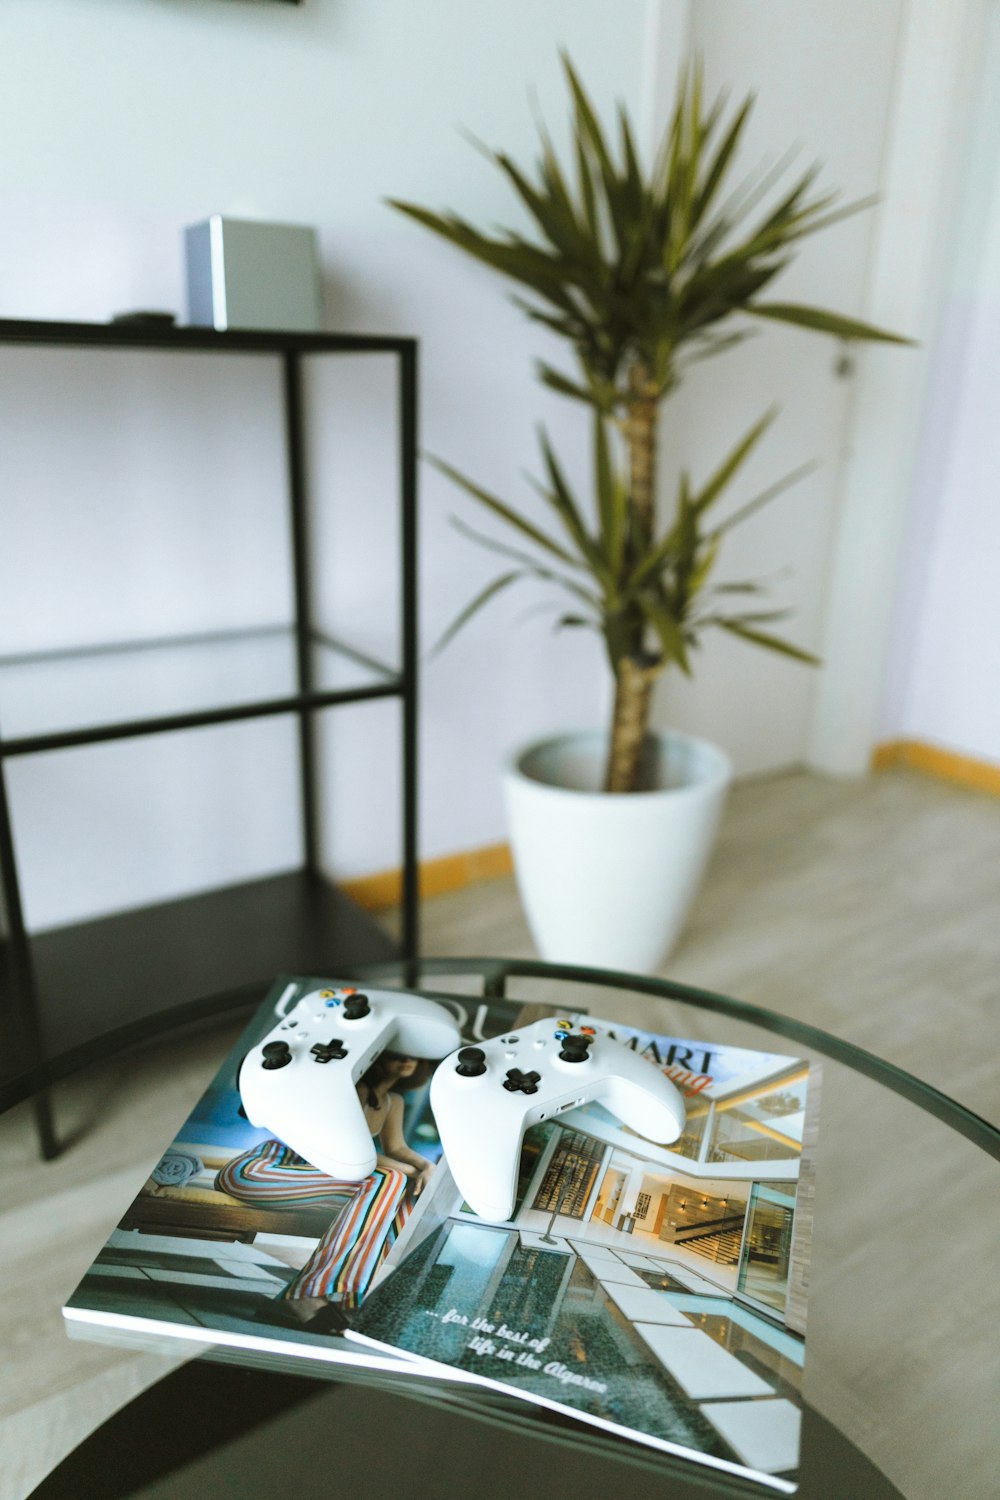 dos mandos de juegos de Xbox One en un libro de revistas sobre una mesa de cristal